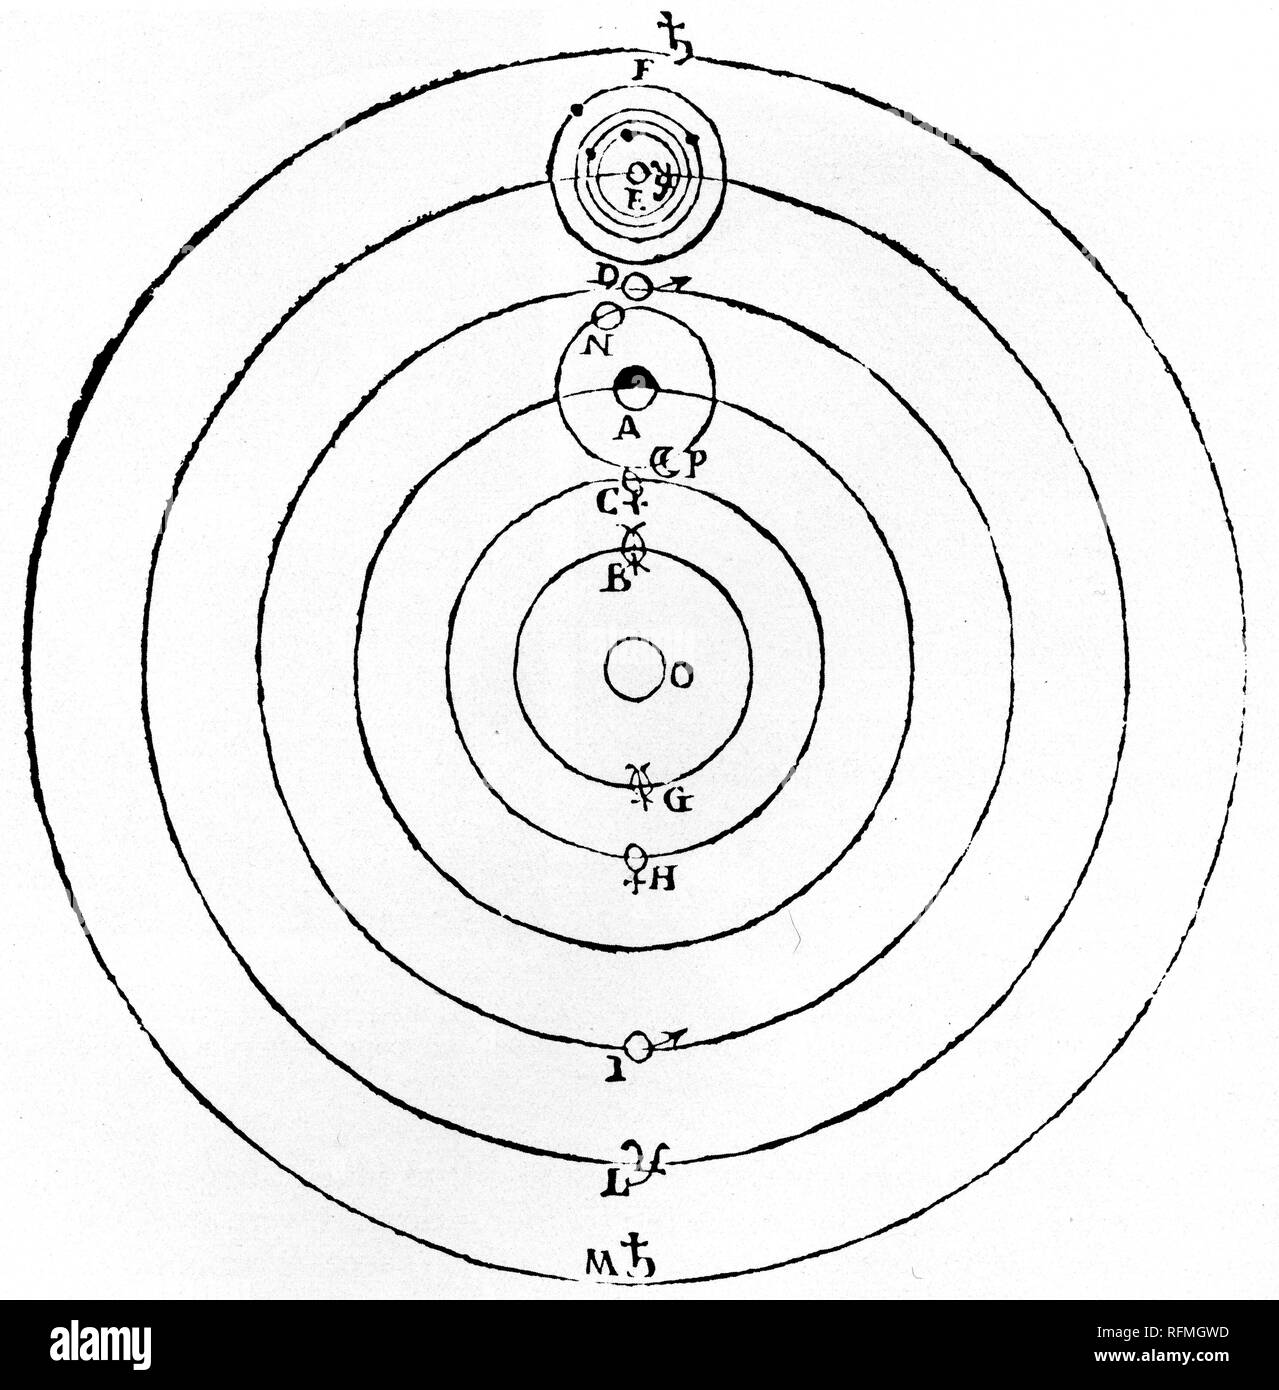 Diagramma di Galileo del sistema solare, 1632. Di Galileo Galilei (1564-1642). Diagramma di Galileo del sistema solare copernicano (eliocentrico). Questo diagramma mostra anche la sua scoperta dei quattro satelliti di Giove. Da 'dialogo', 1632. Foto Stock